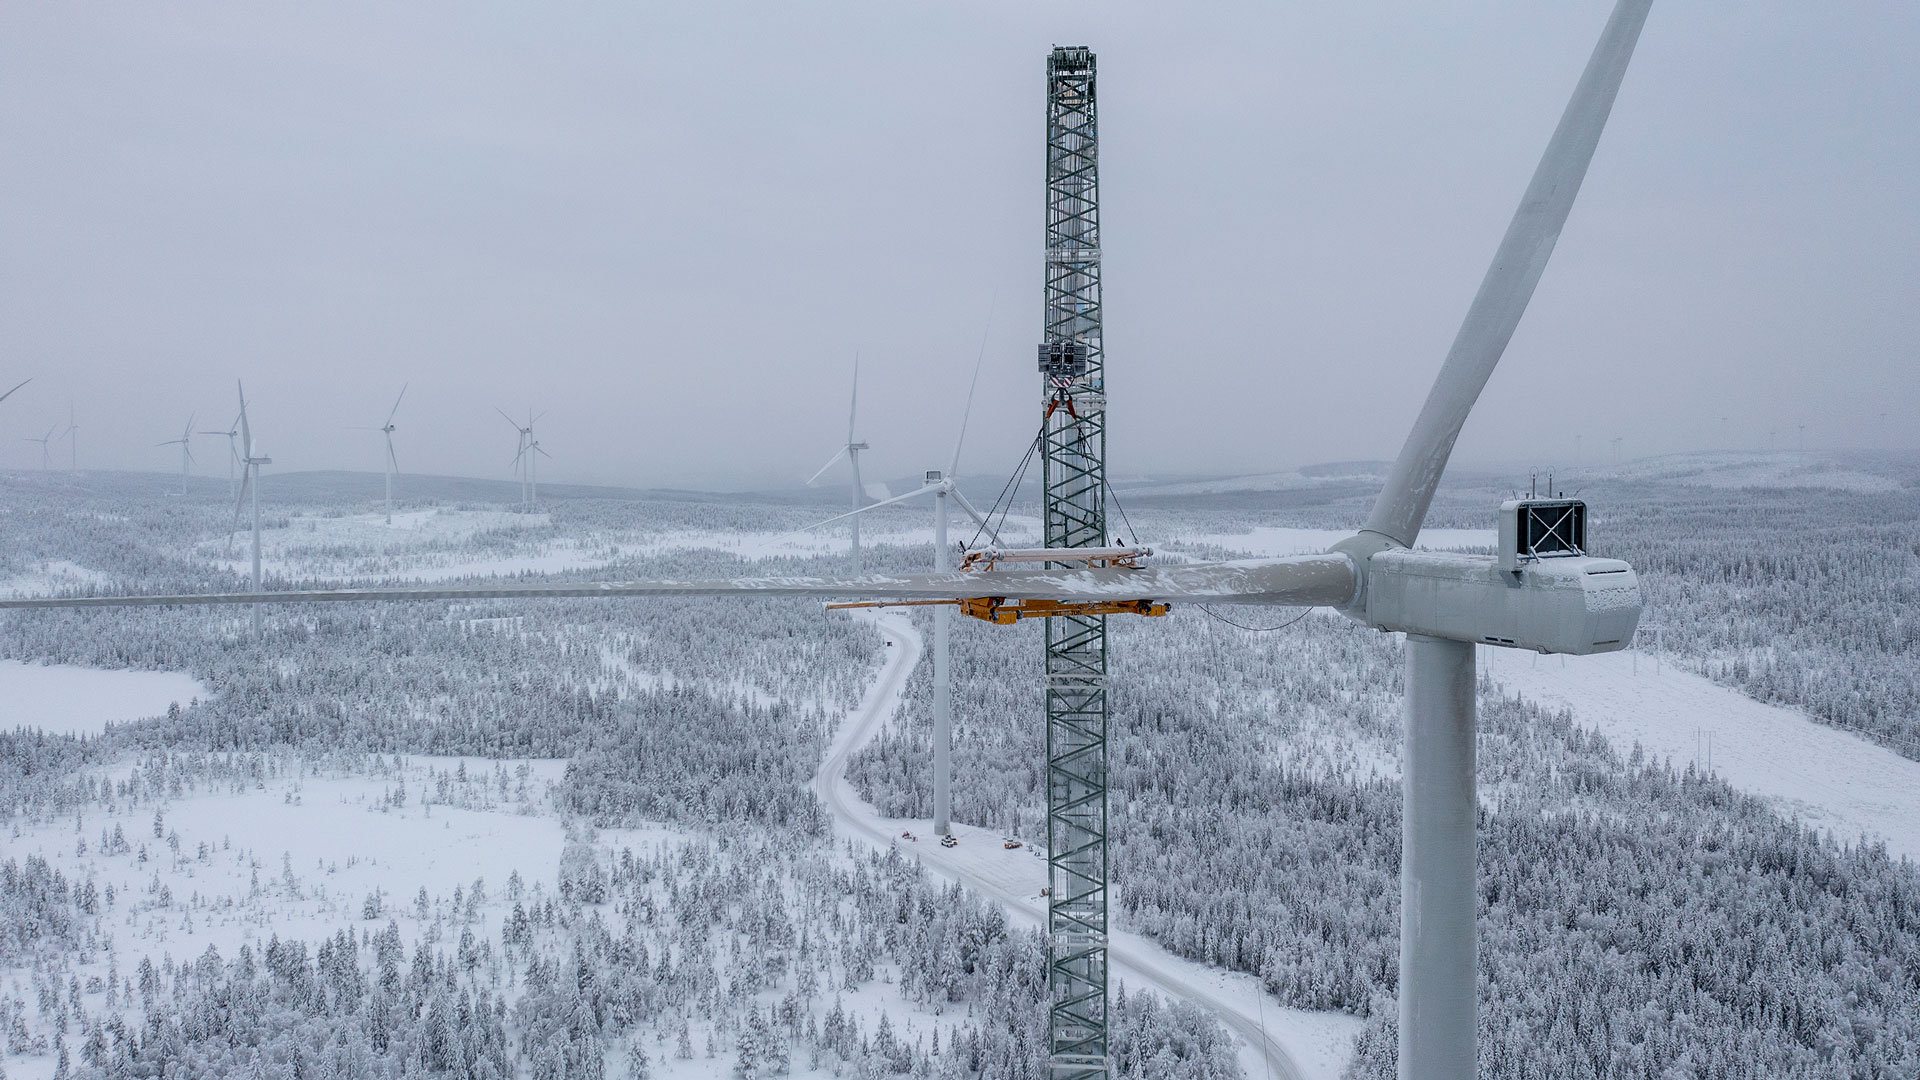 Blakliden Fäbodberget windfarm in northern Sweden